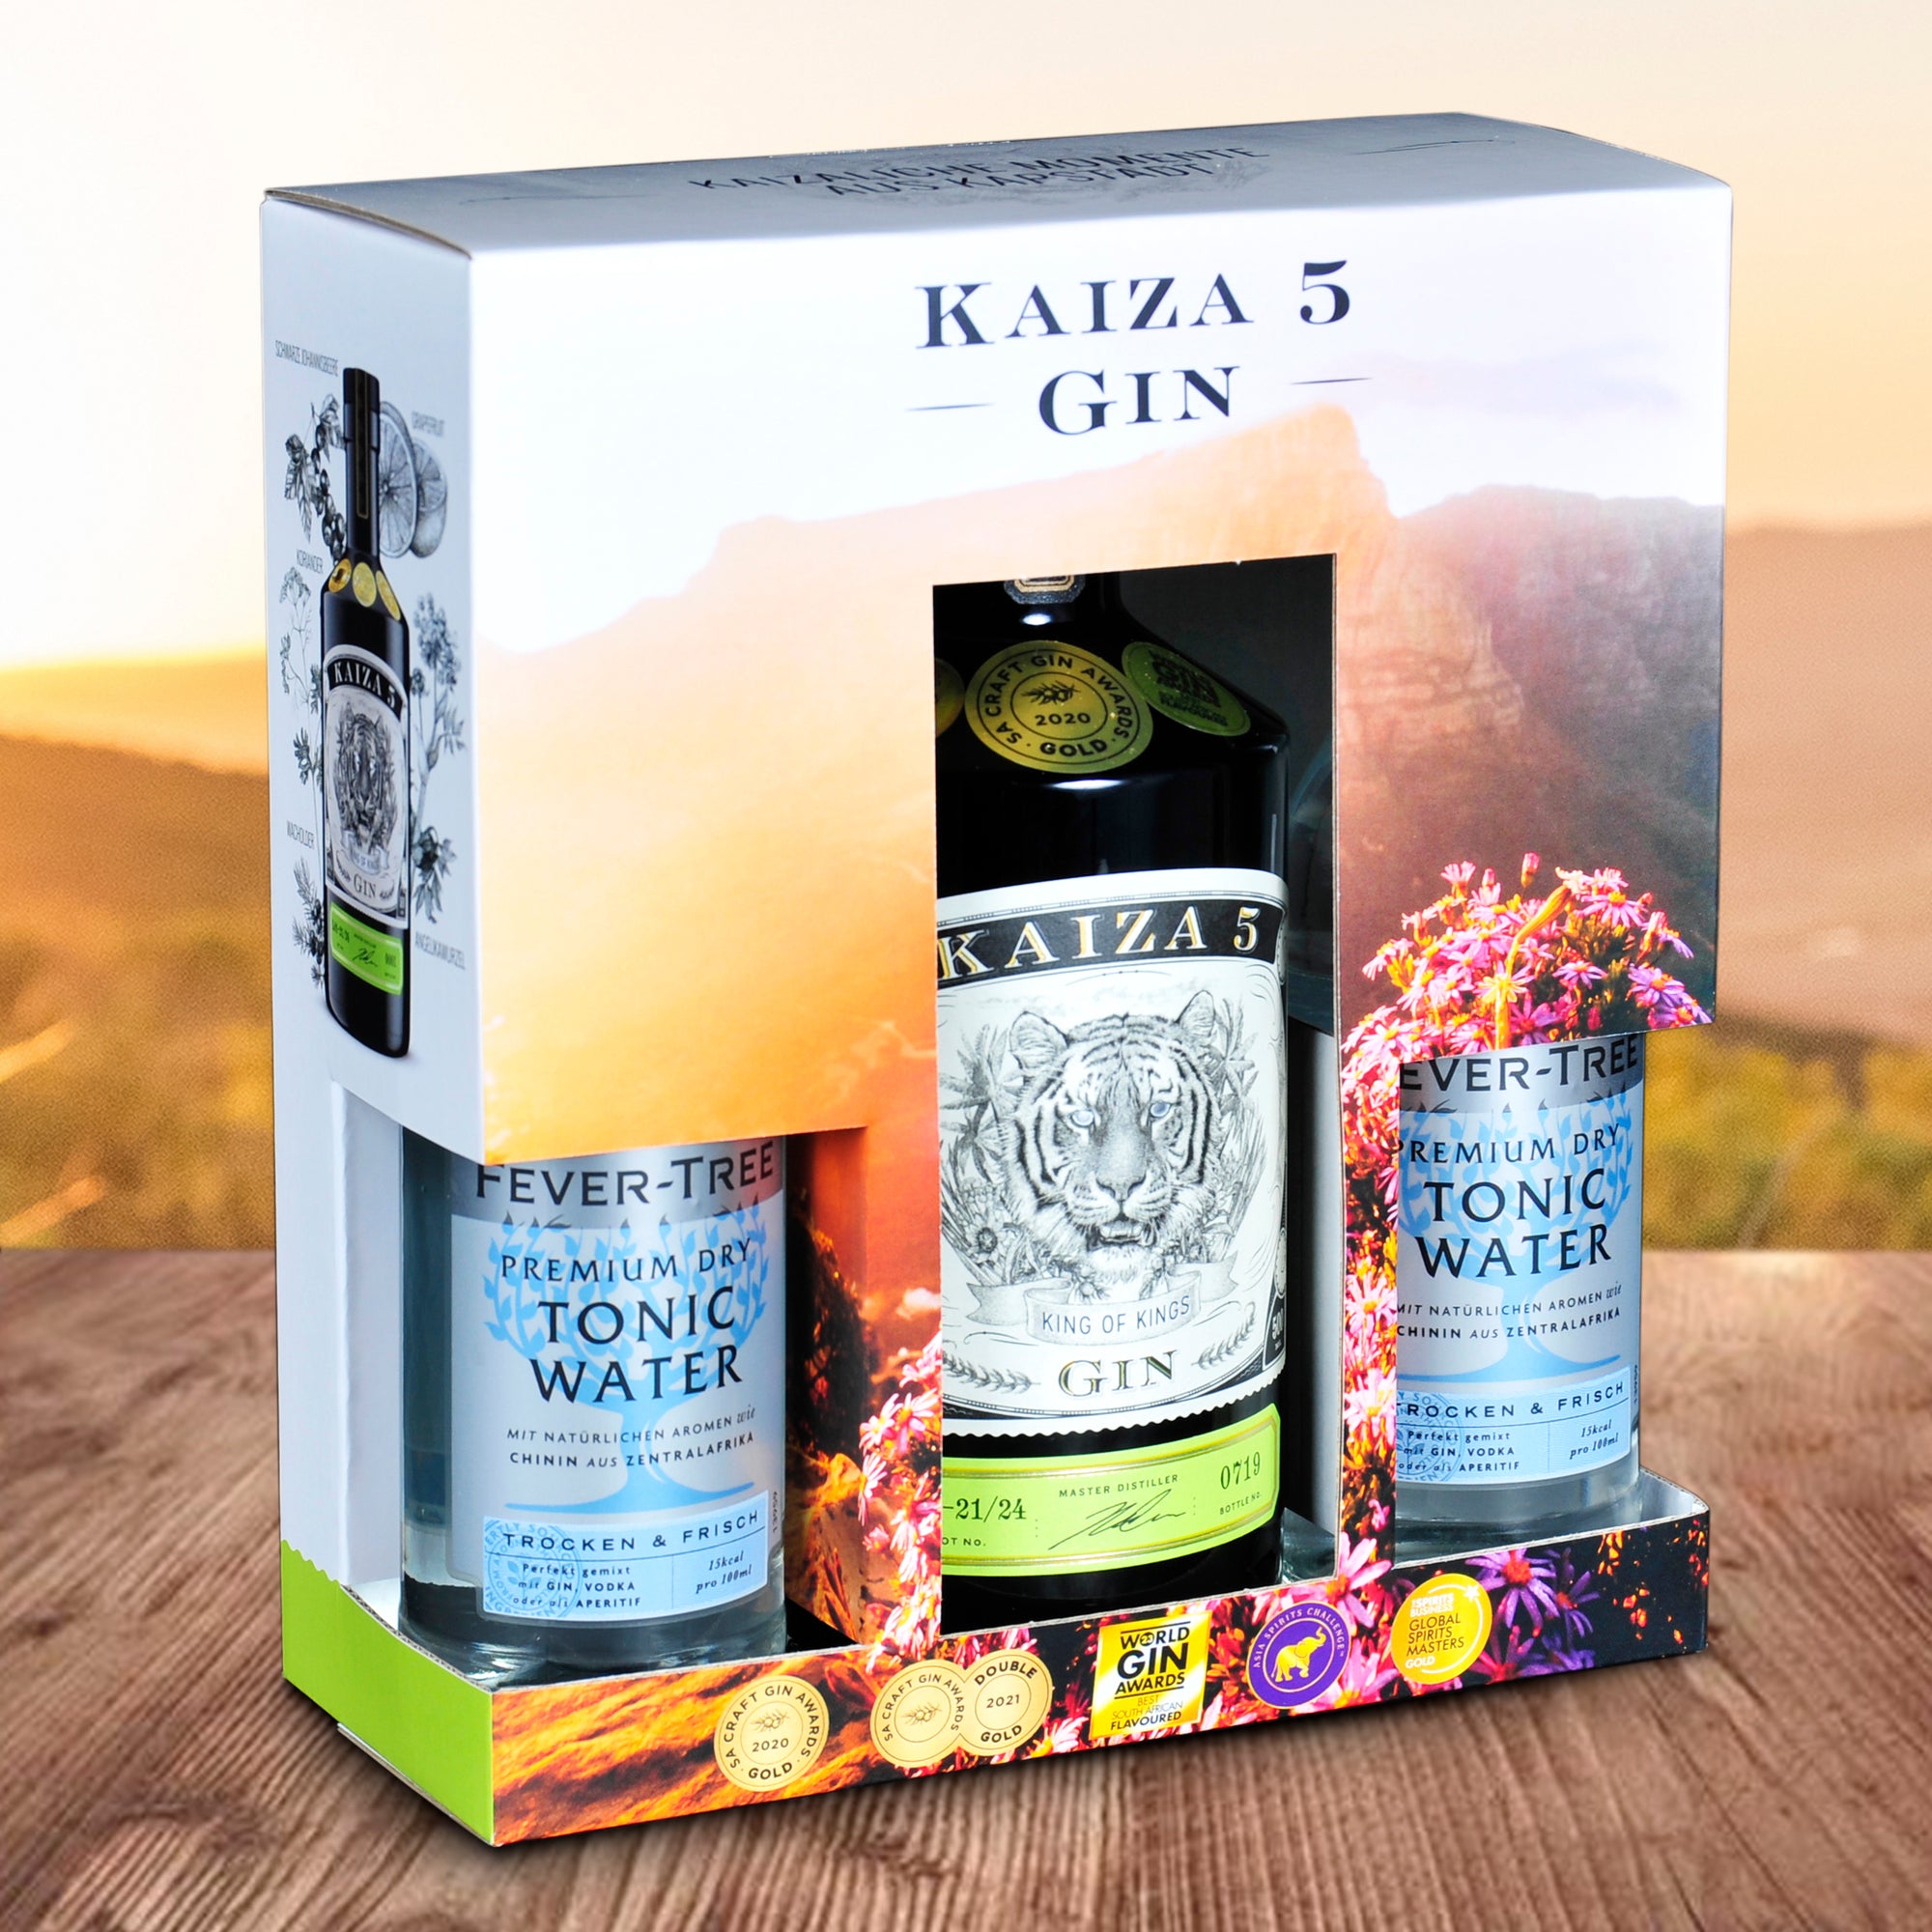 KAIZA 5 GIN Box mit 2x Fever-Tree Premium Dry Tonic Water